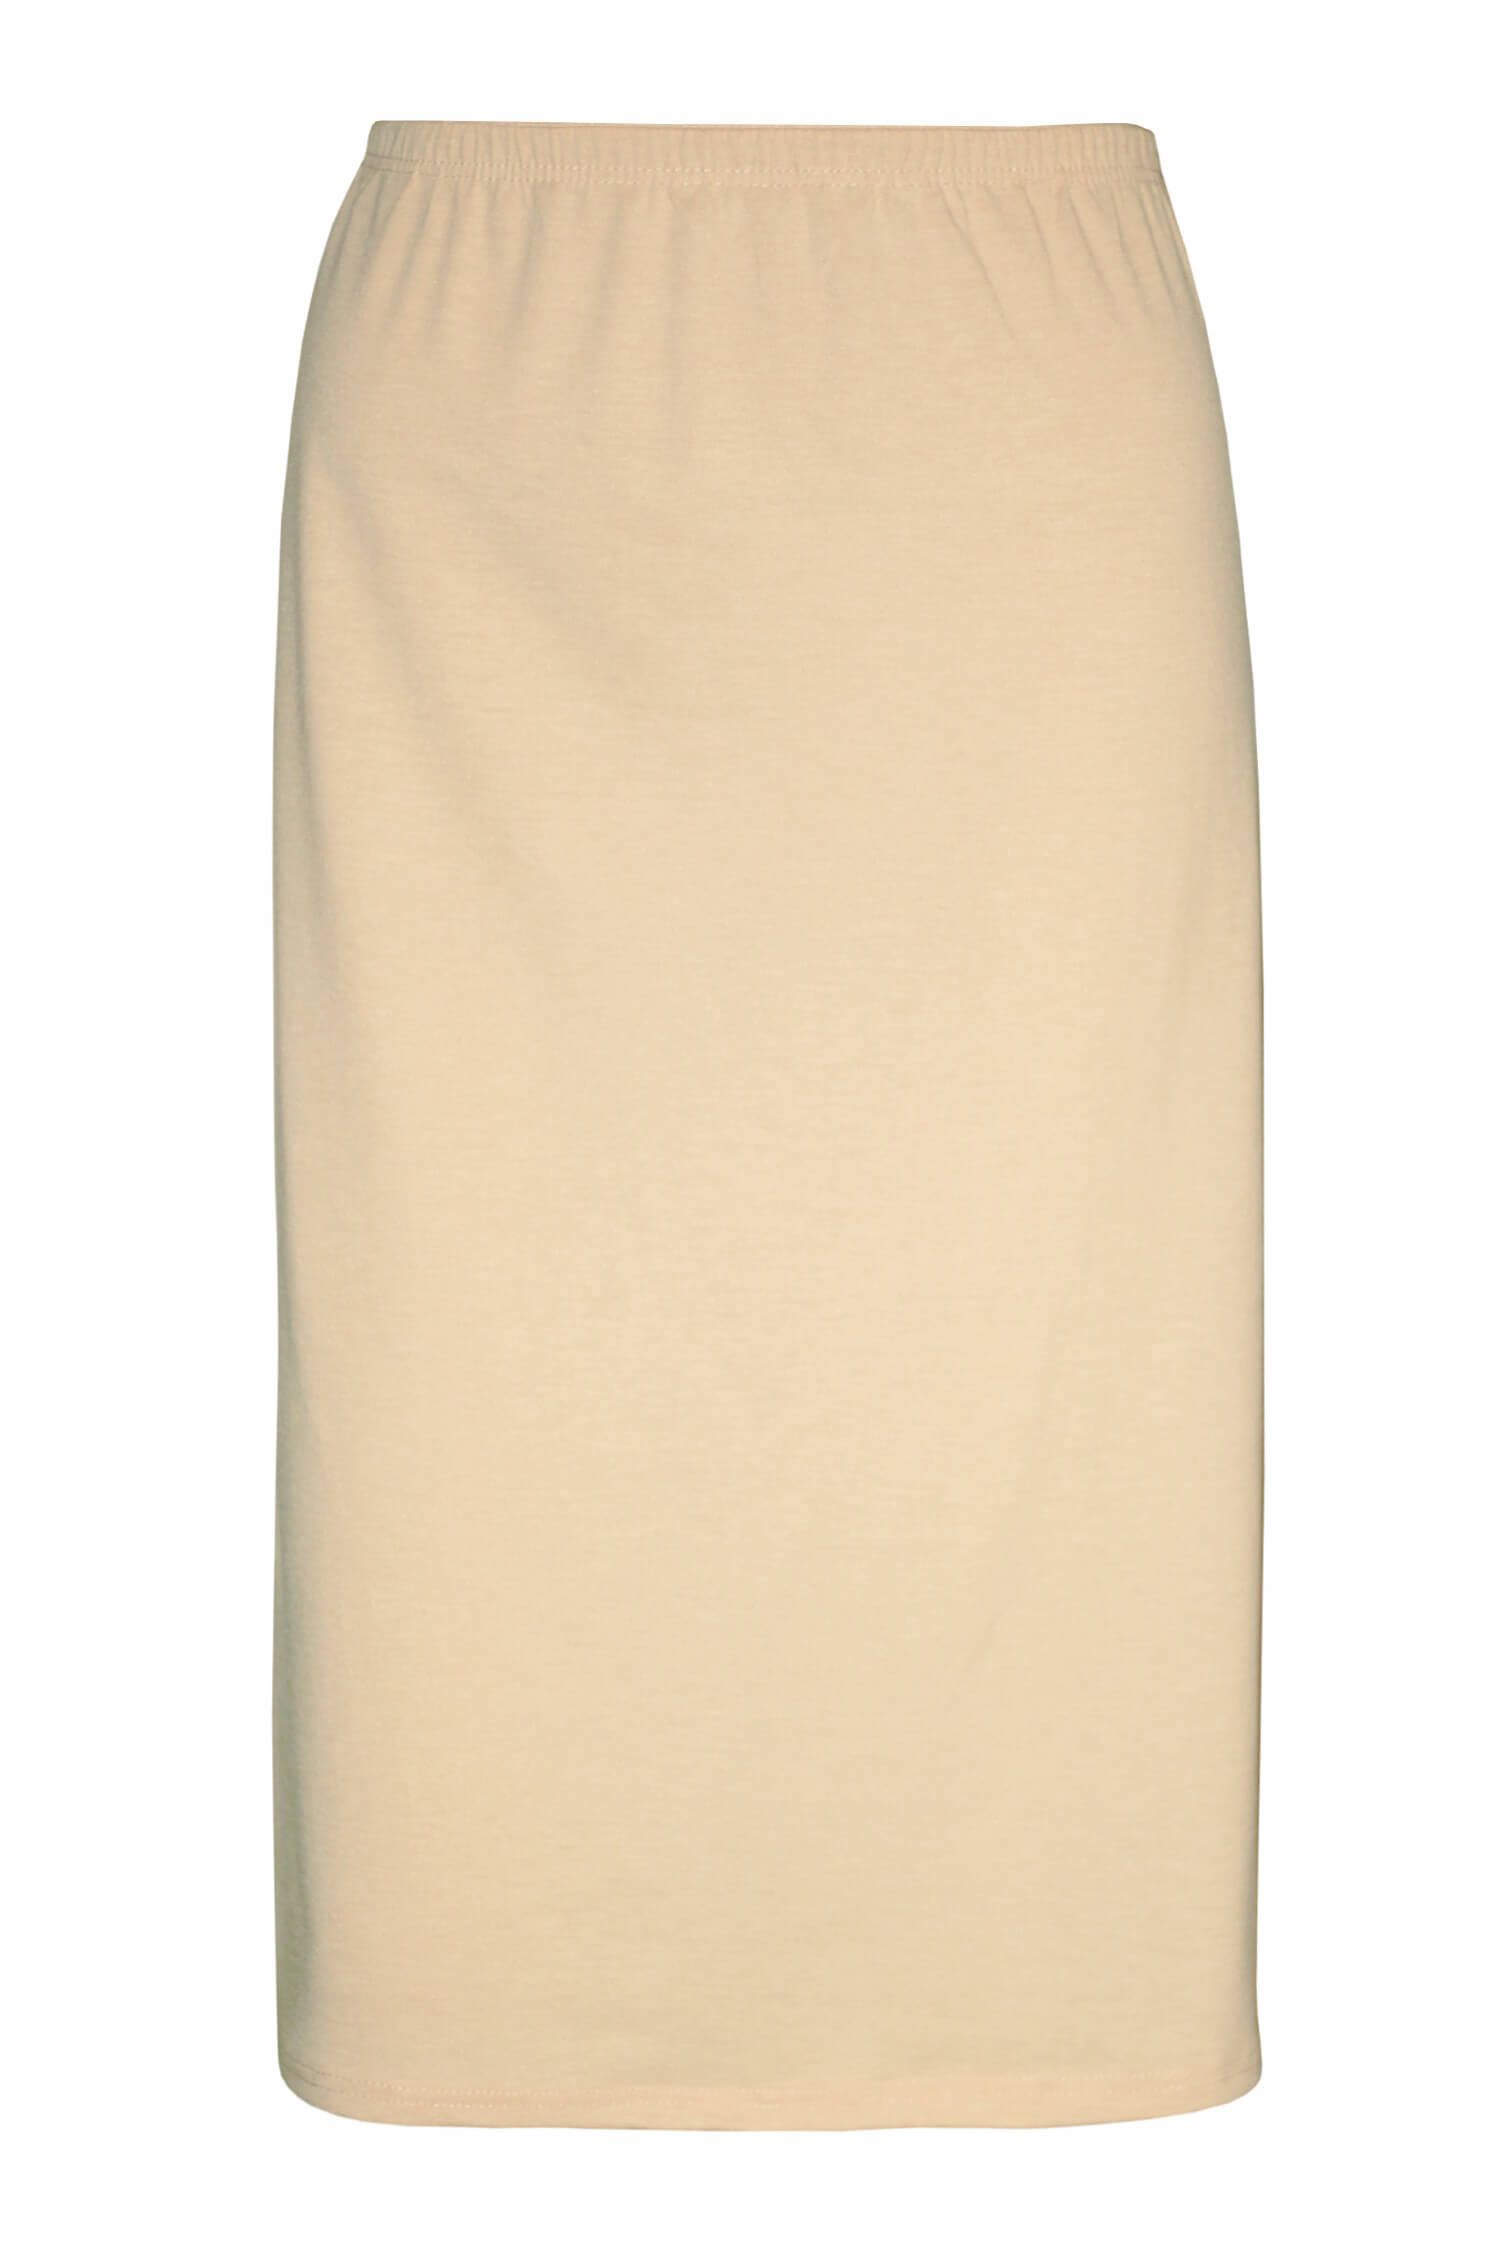 Arnoštka bavlněná spodnička - sukně 716 béžová M